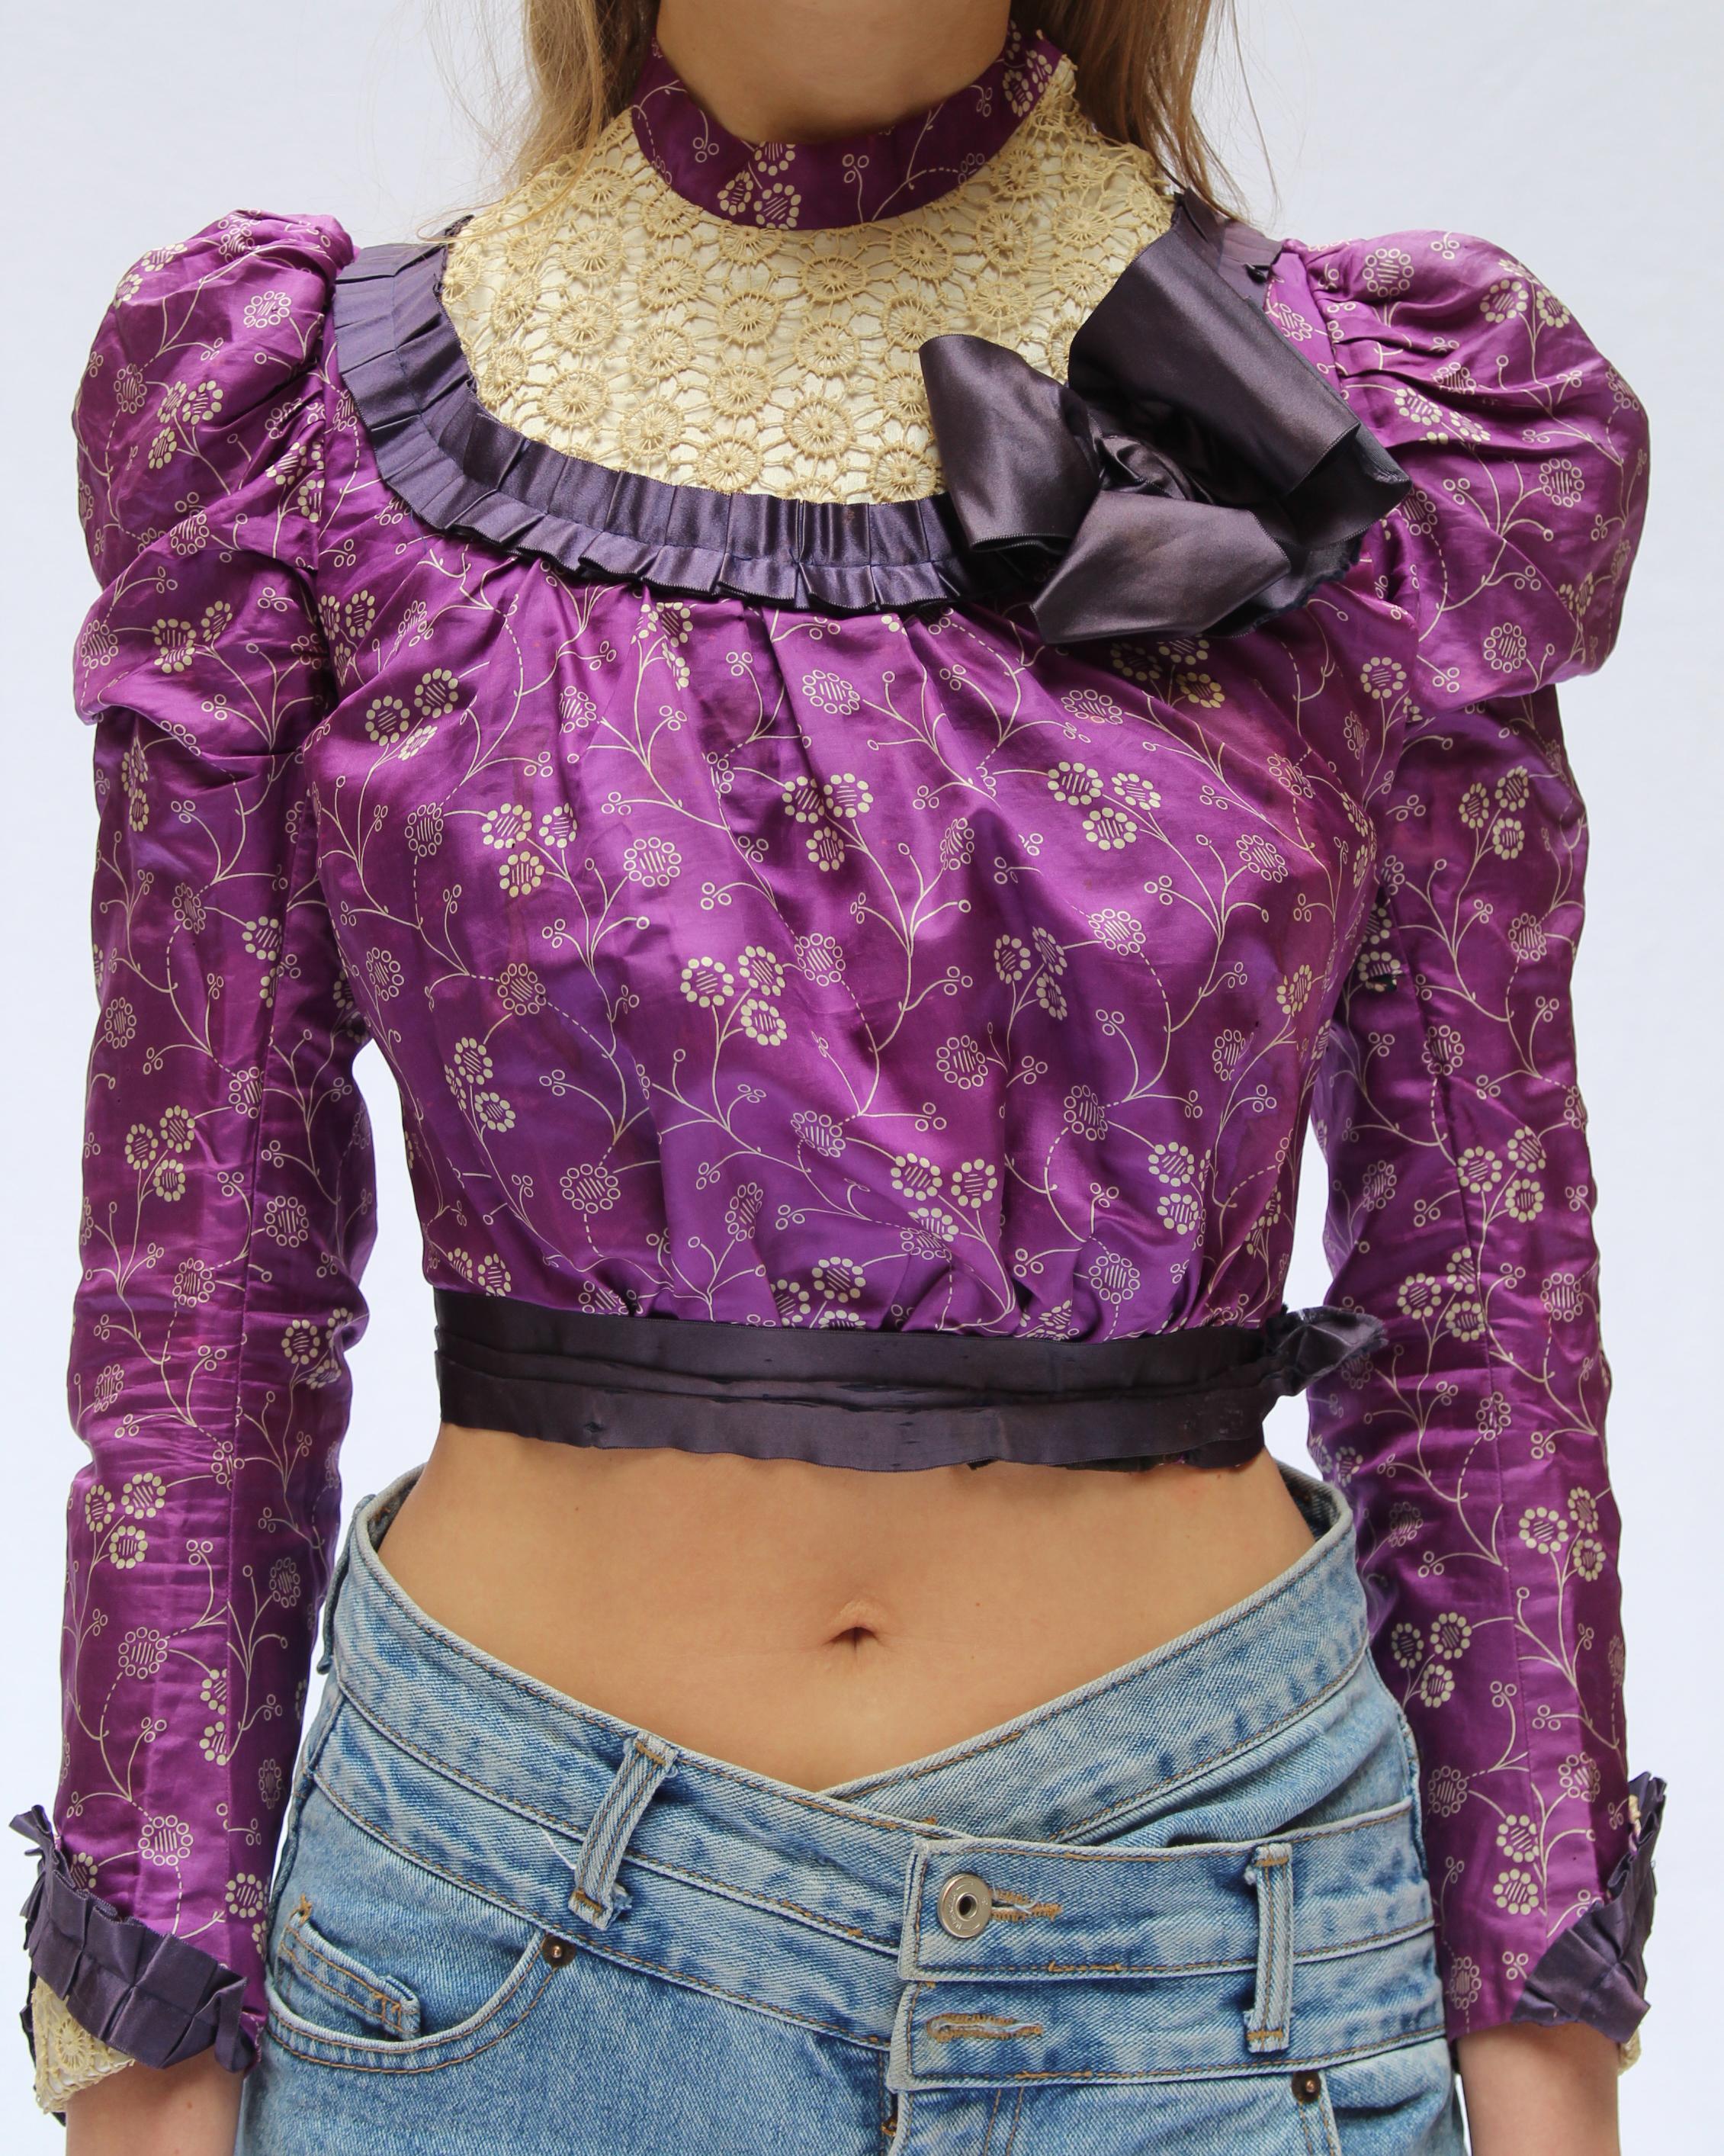 Antike viktorianische Kleidung ist selten genug zu bekommen, und diese Bluse ist ein ganz besonderes Sammlerstück. CIRCA 1890, aus wunderschöner bedruckter Seide, mit lilafarbenen Seidendetails und Häkelspitzendetails an Brust und Manschetten -